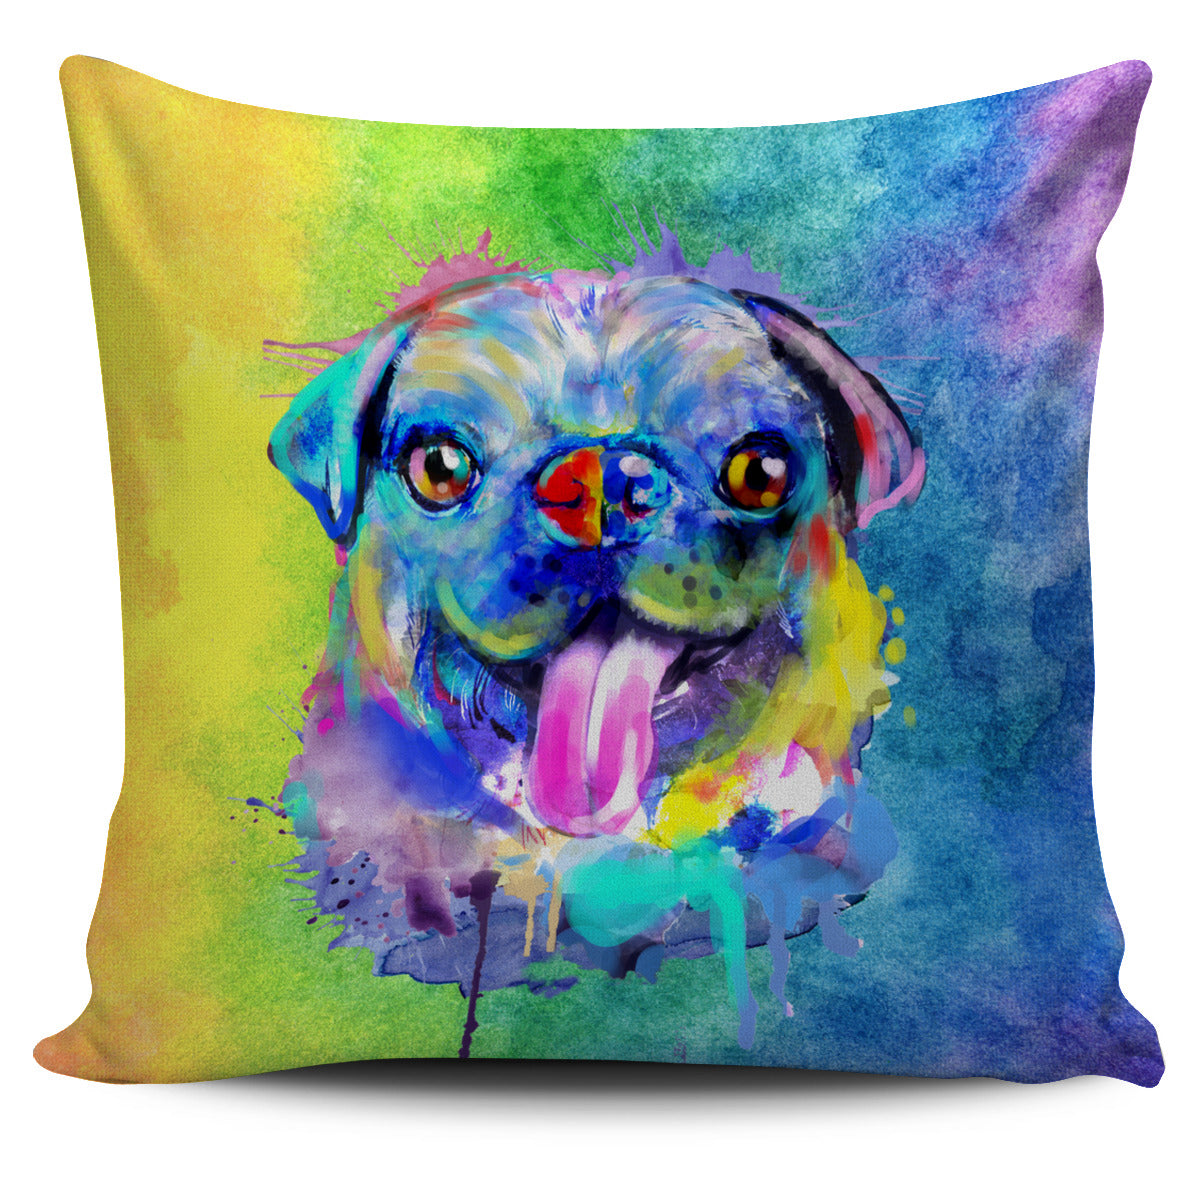 Rainbow Pug Pillow Cover